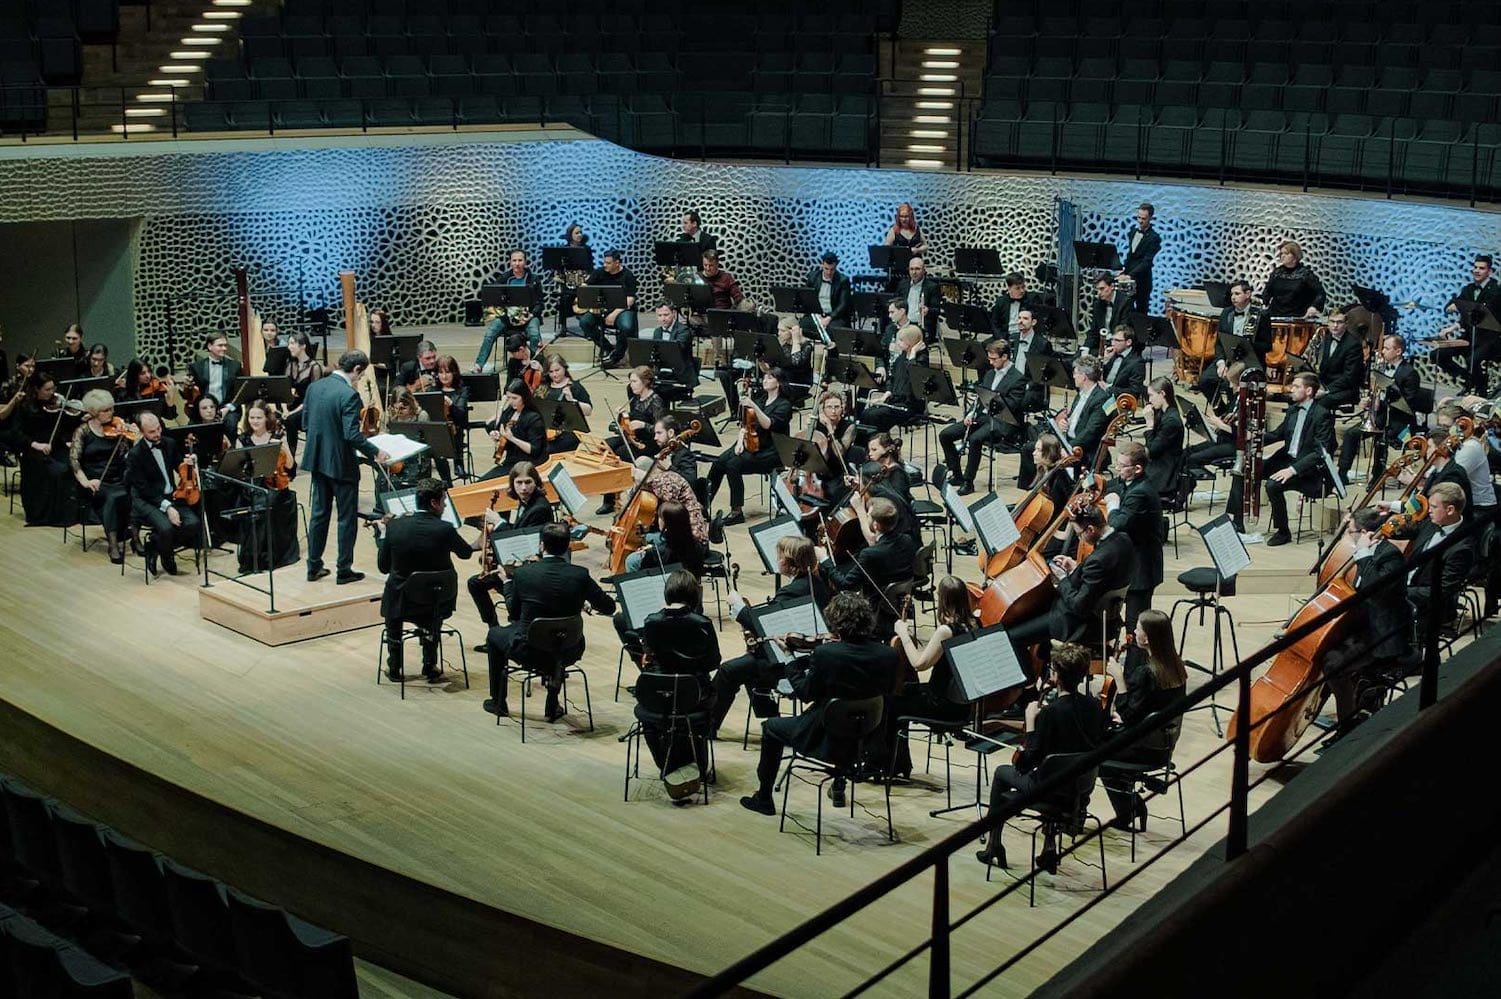 Das Kyiv Symphony Orchestra mit dem Dirigenten Luigi Gaggero auf einer Konzertbühne. © Elza Zherebchuk